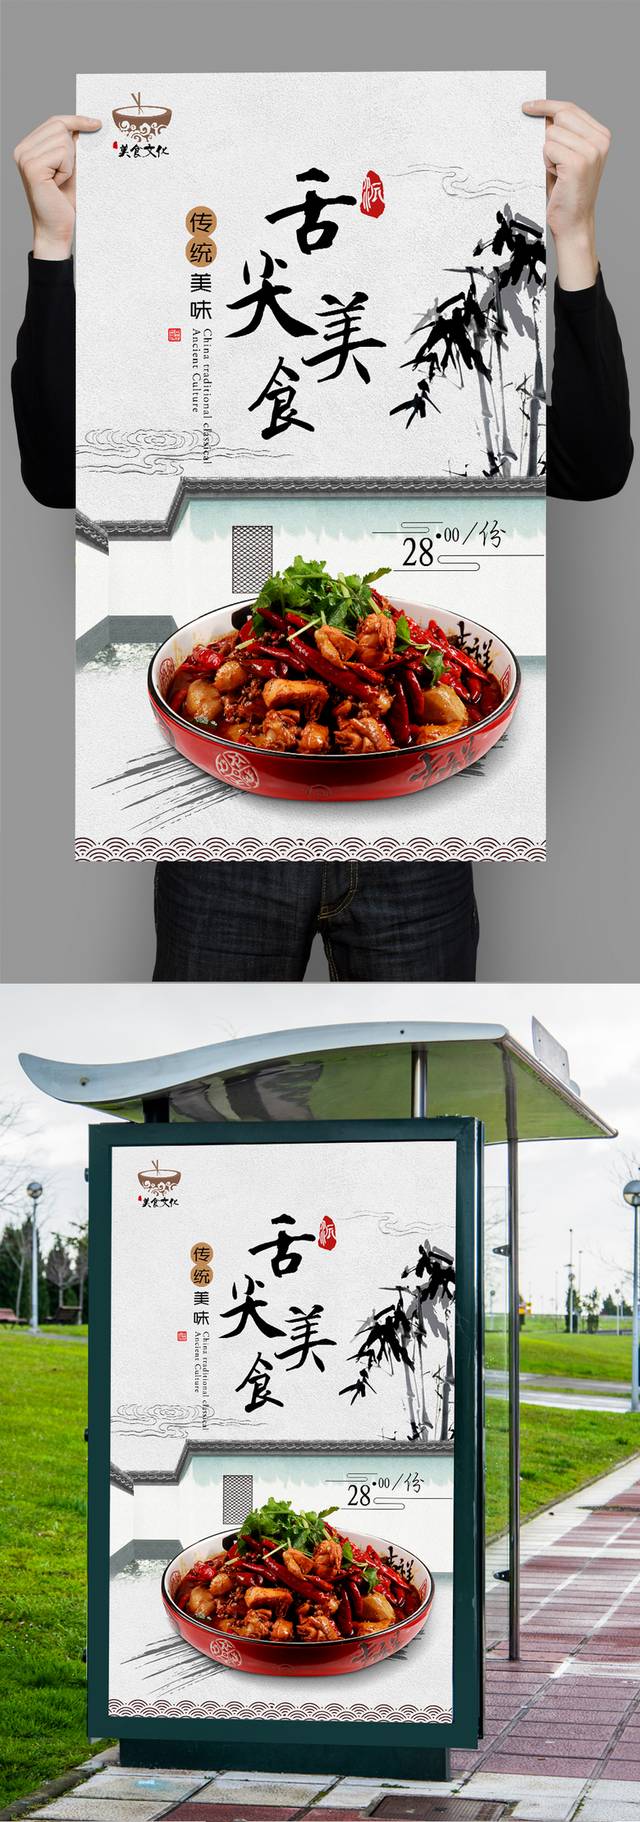 高档中国风烧鸡公宣传海报设计